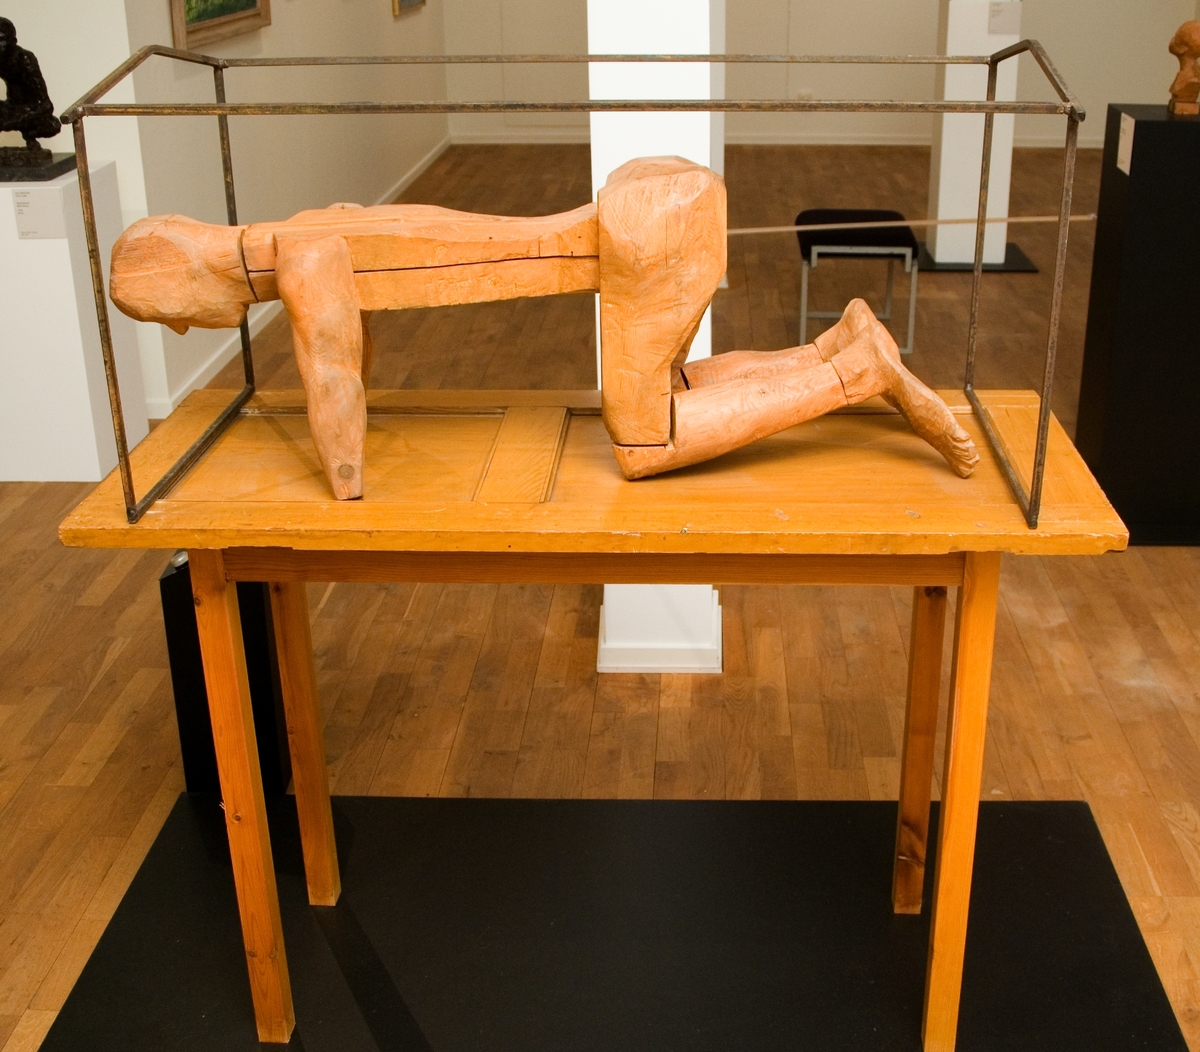 Träskulptur av Torsten Renqvist "Mannen i buren", 1968. Sockeln till skulpturen är uppbyggd som ett bord. Bordsskivan är en dörr som bärs upp av  fyra ben. På "bordet" en skulpterad mansfigur av trä, knästående. Han omges av ett järnstativ som symboliserar buren.
Skulpturen märkt på bordets undersida och mansfiguens bröst.